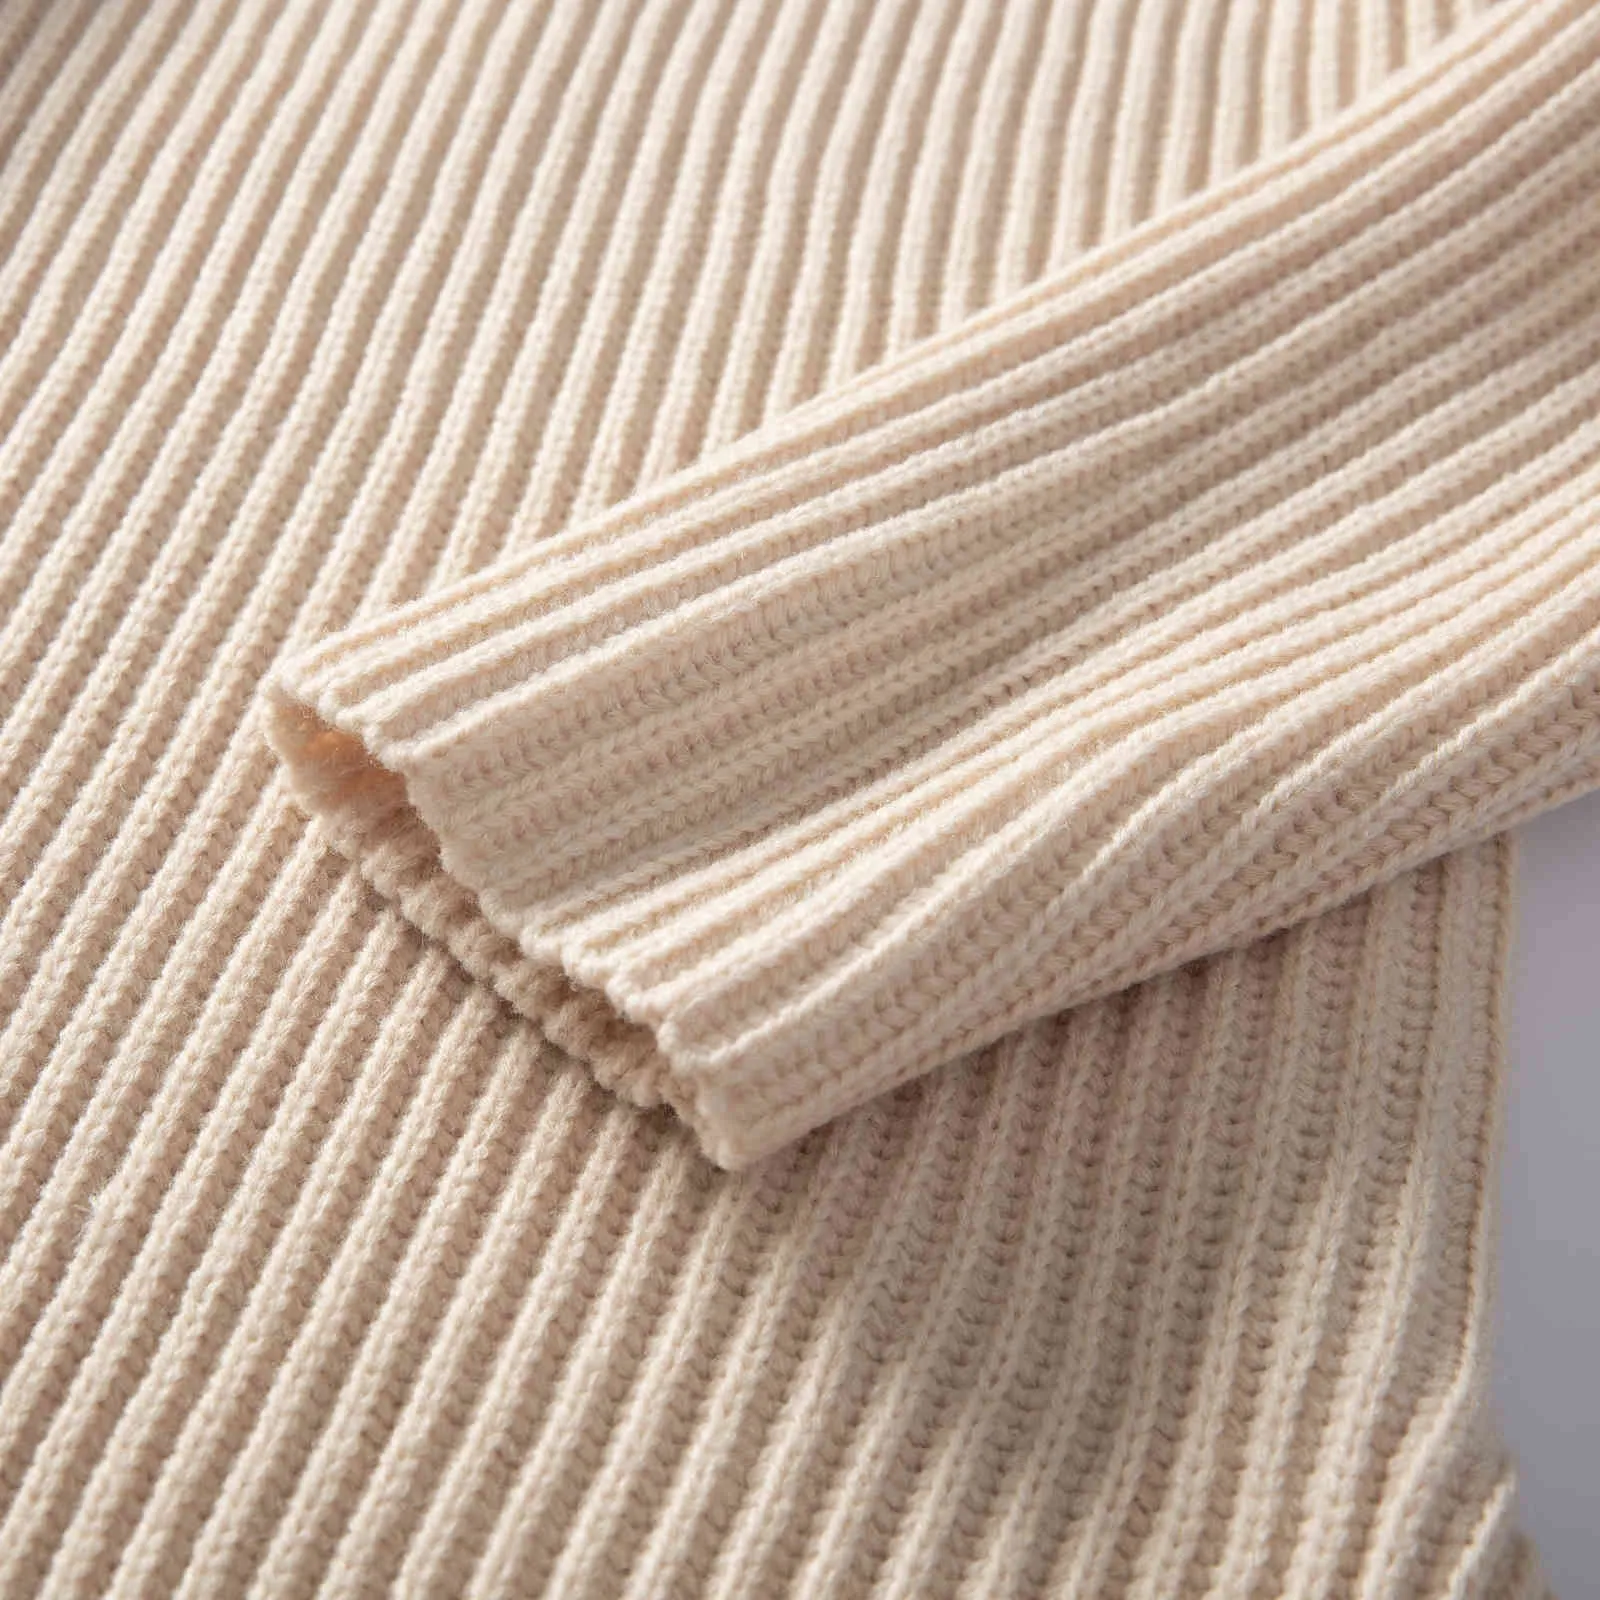 2021 automne hiver nouveau design laine pull femmes mode ample épais chaud col roulé pulls femme pull Y1110